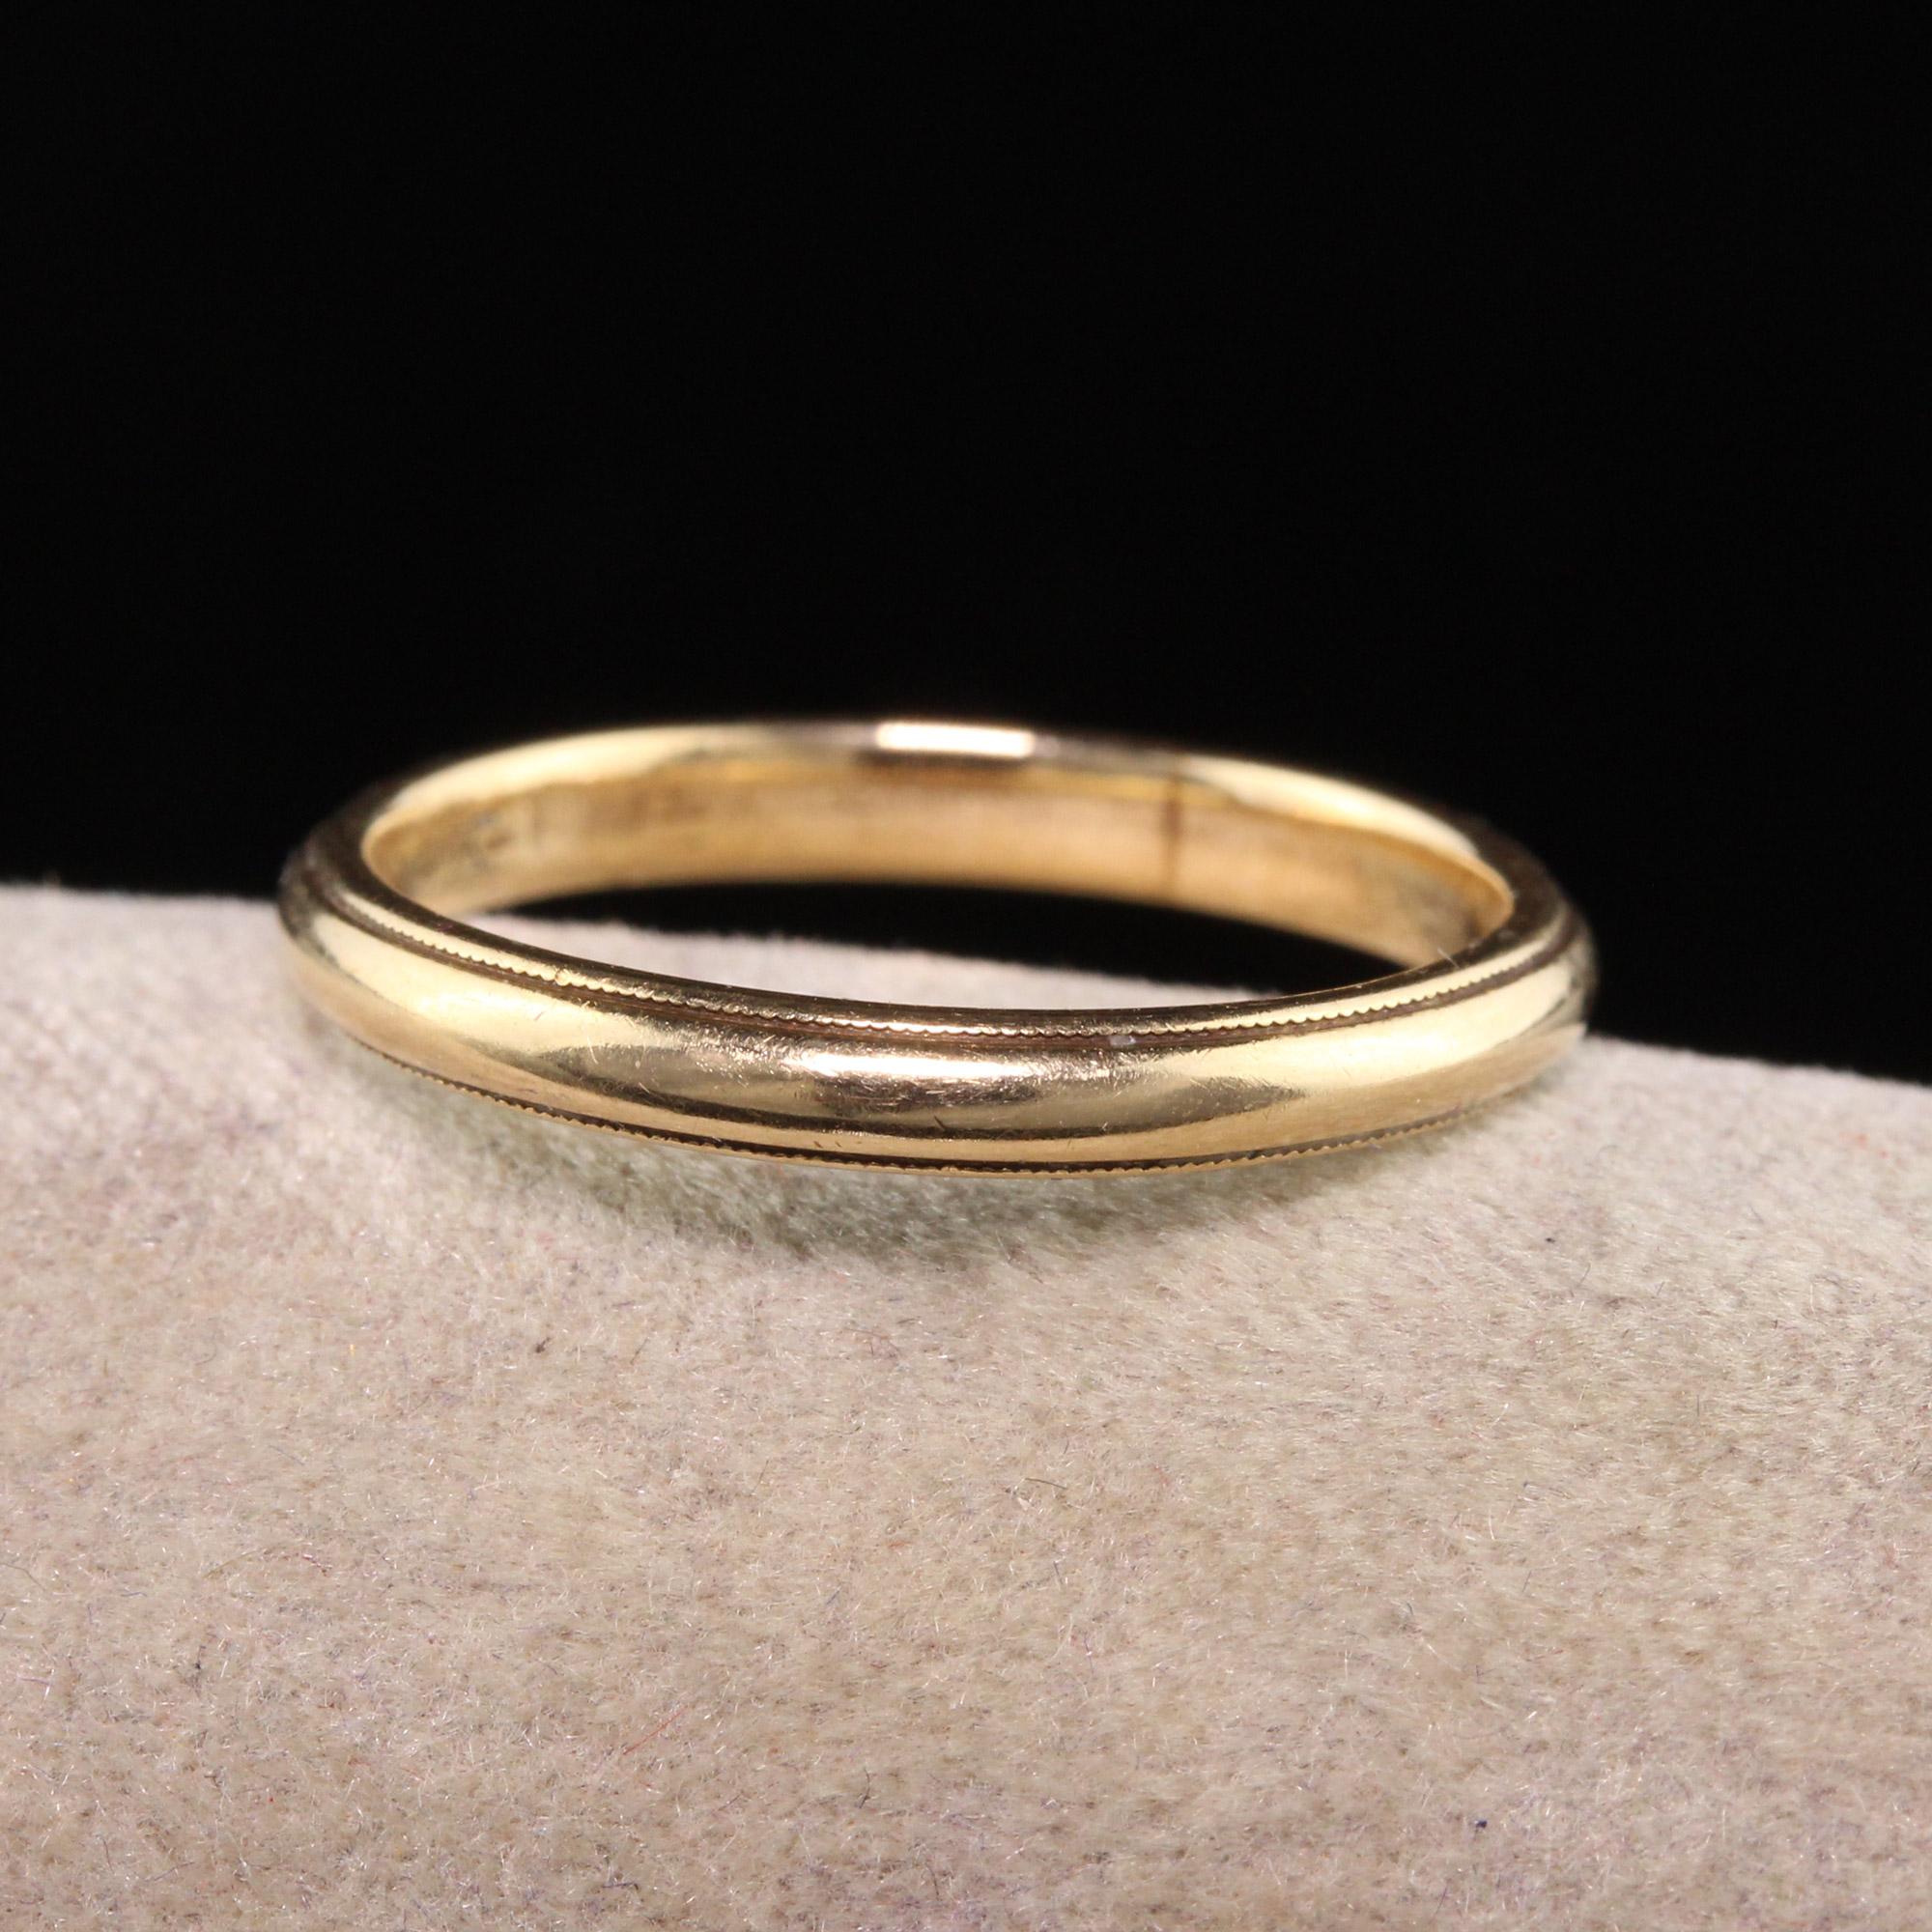 Magnifique anneau de mariage gravé classique en or jaune 14K de style Art Deco. Cette alliance classique est fabriquée en or jaune 14 carats et présente un design subtil qui peut être empilé avec d'autres alliances.

Article #R1215

Métal : Or jaune